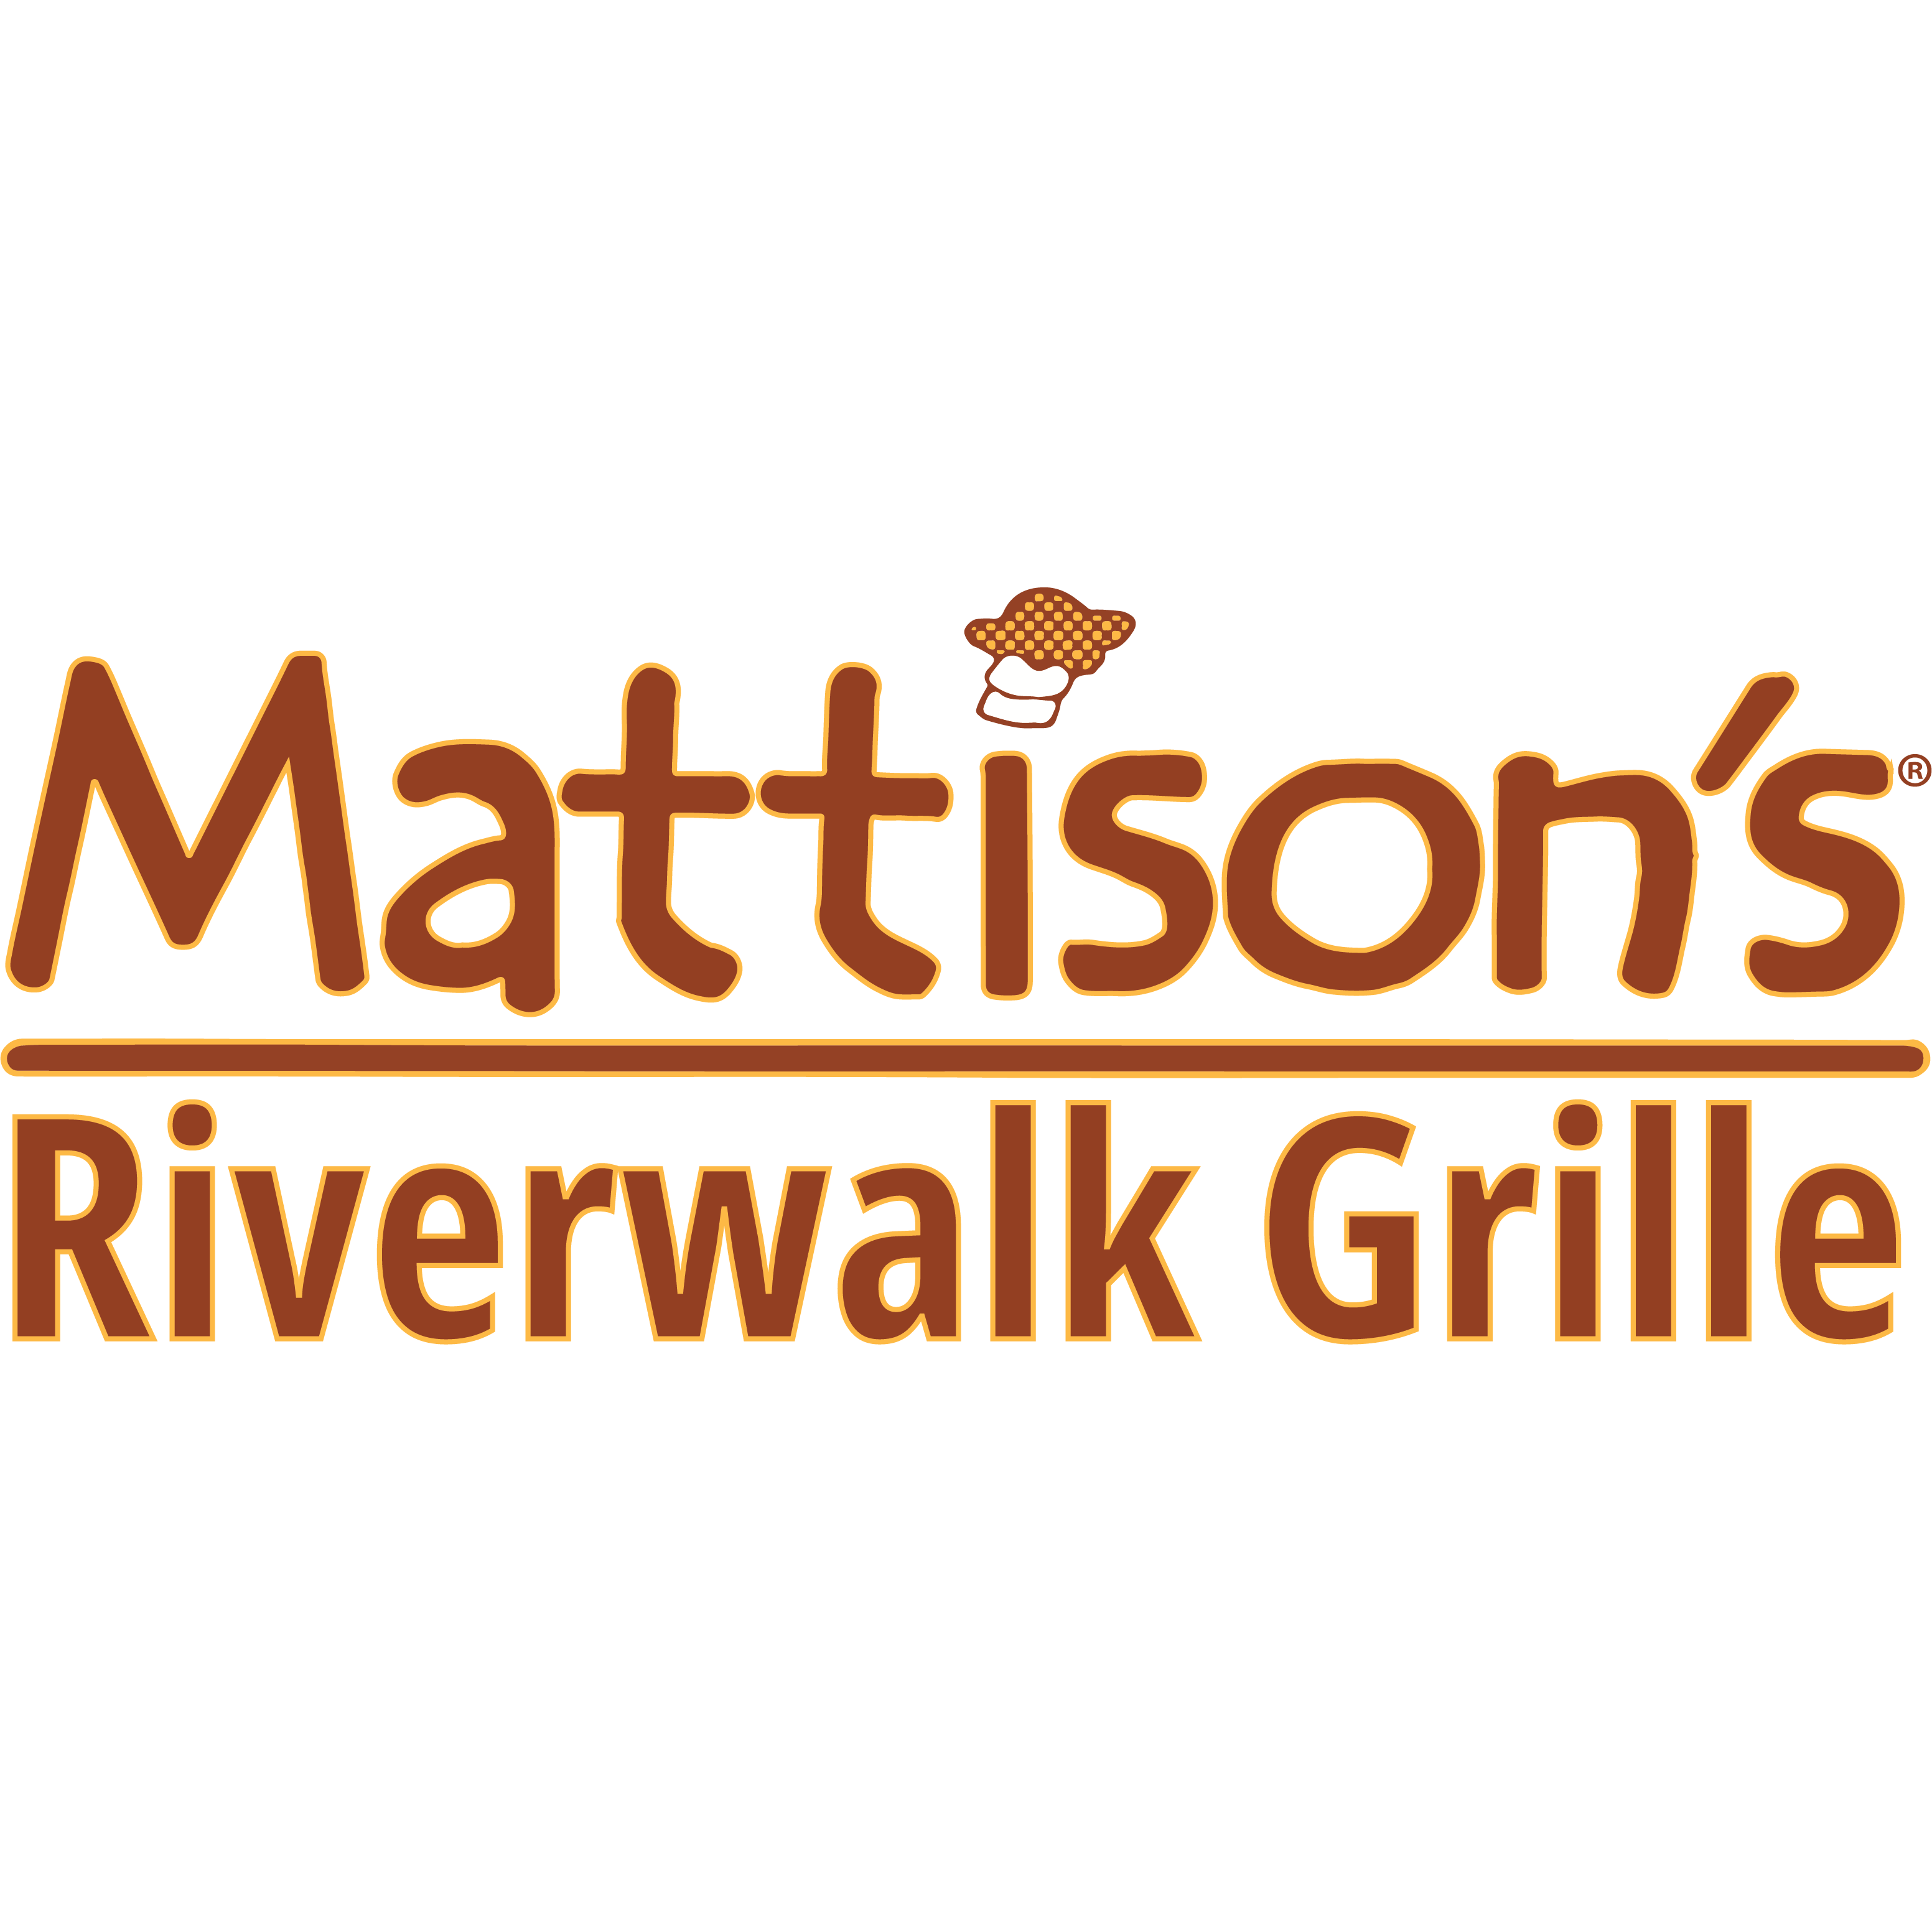 Mattison's Riverwalk Grille - Bradenton, FL 34205 - (941)896-9660 | ShowMeLocal.com